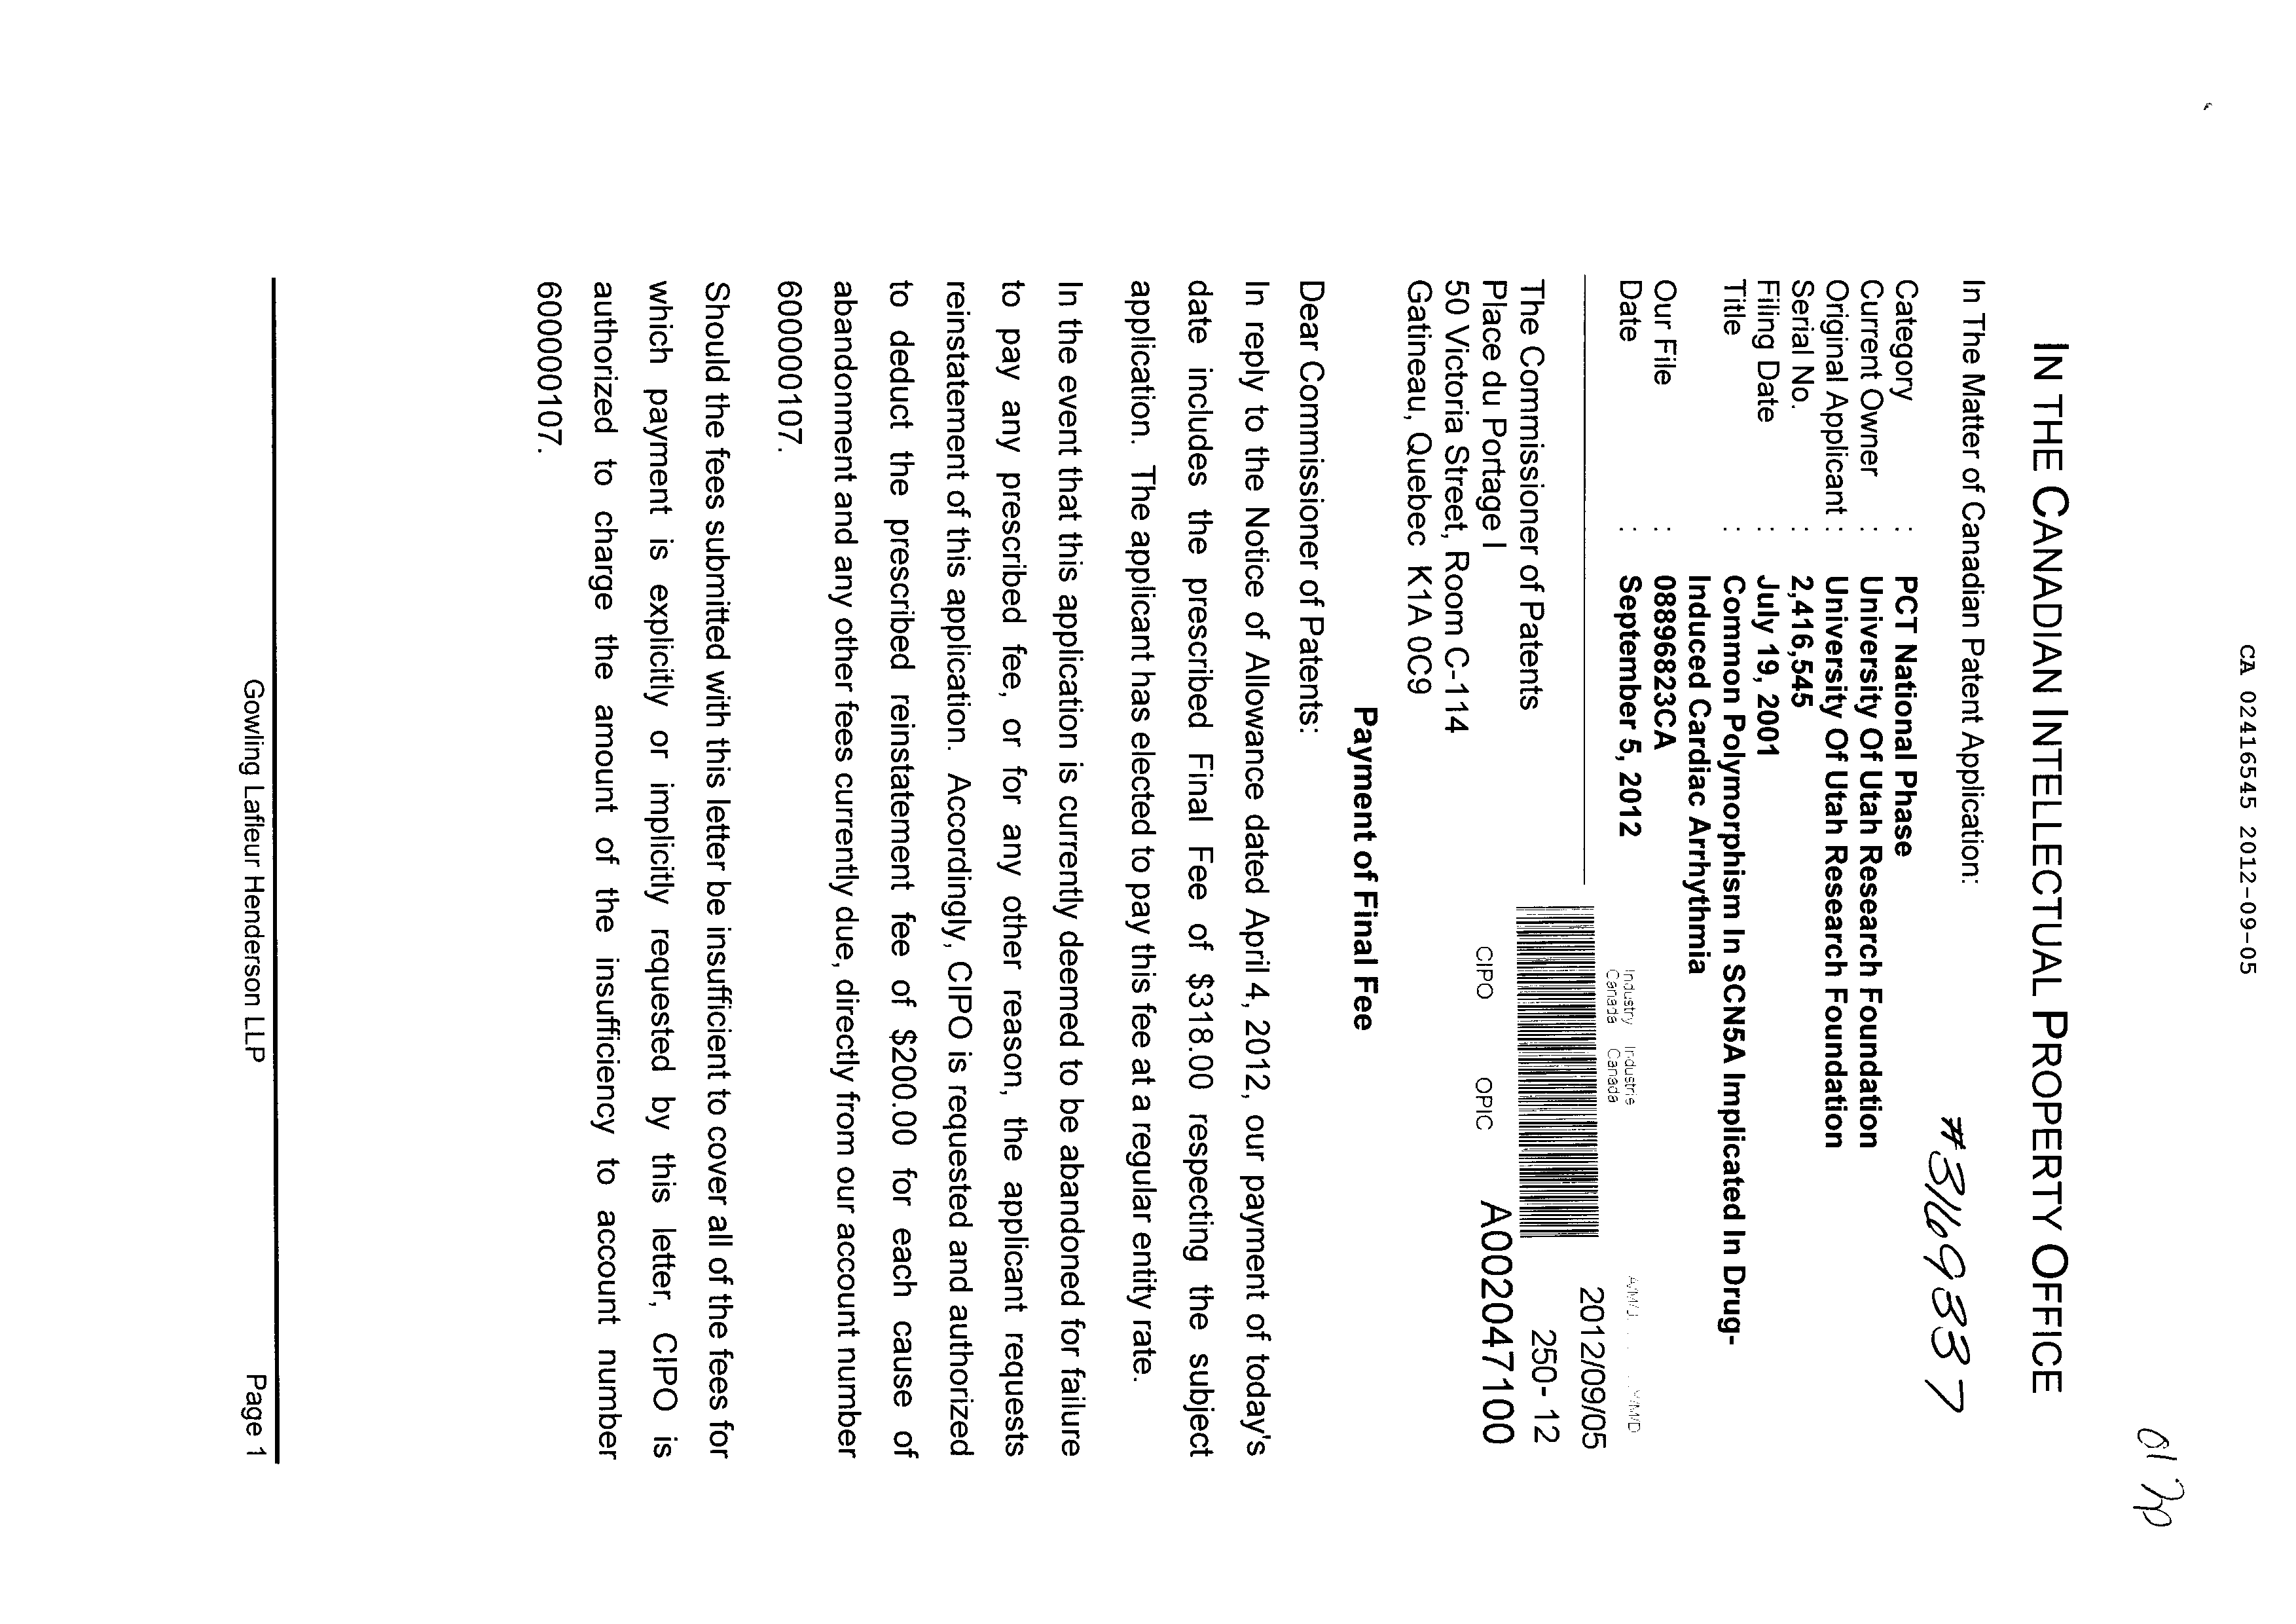 Document de brevet canadien 2416545. Correspondance 20111205. Image 1 de 2